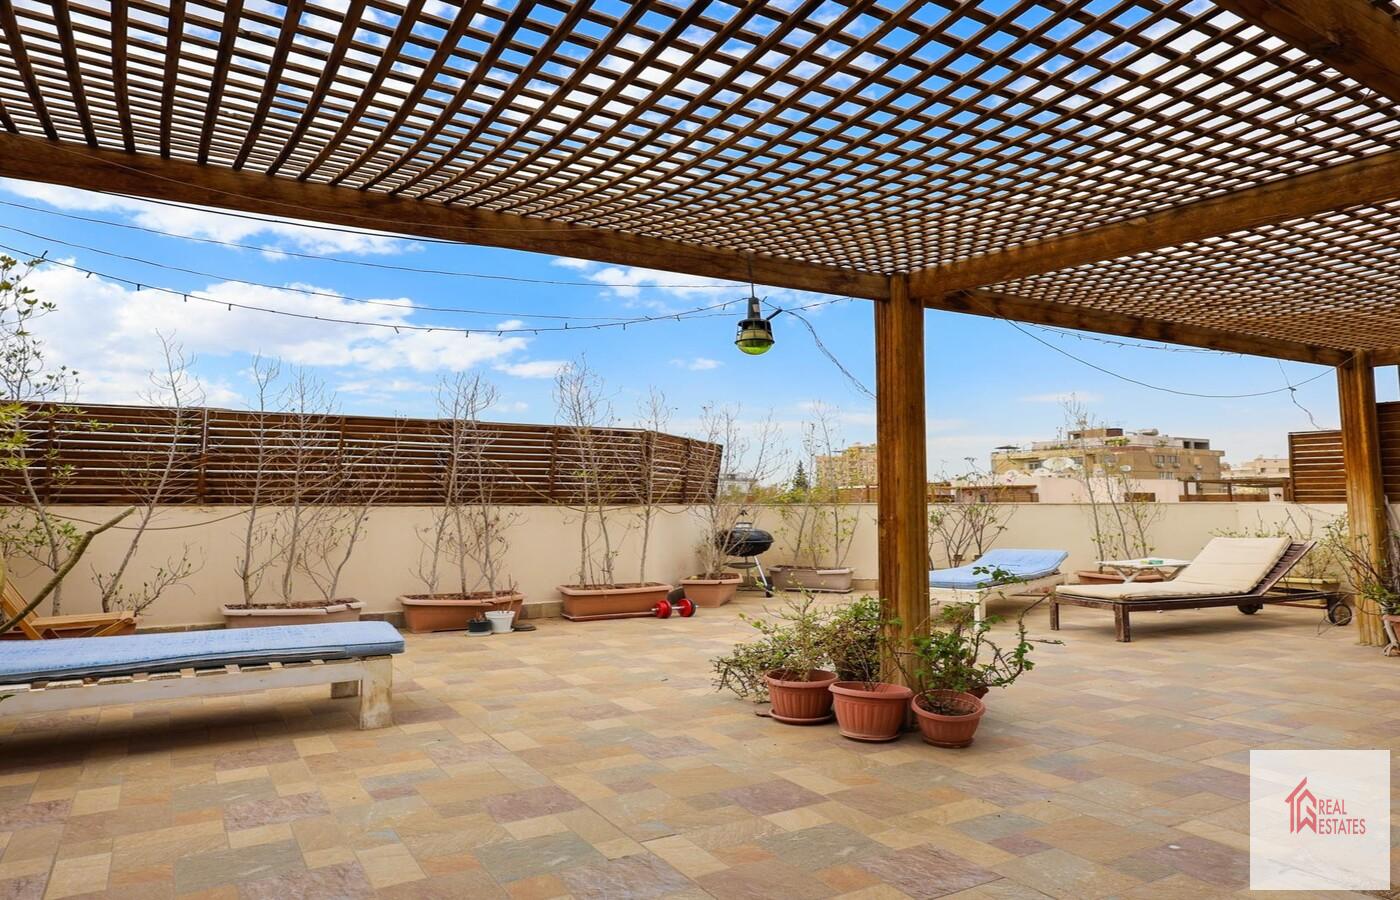 Superbe duplex sur le toit avec piscine partagée à louer à Sarayat maadi - Le Caire - Egypte